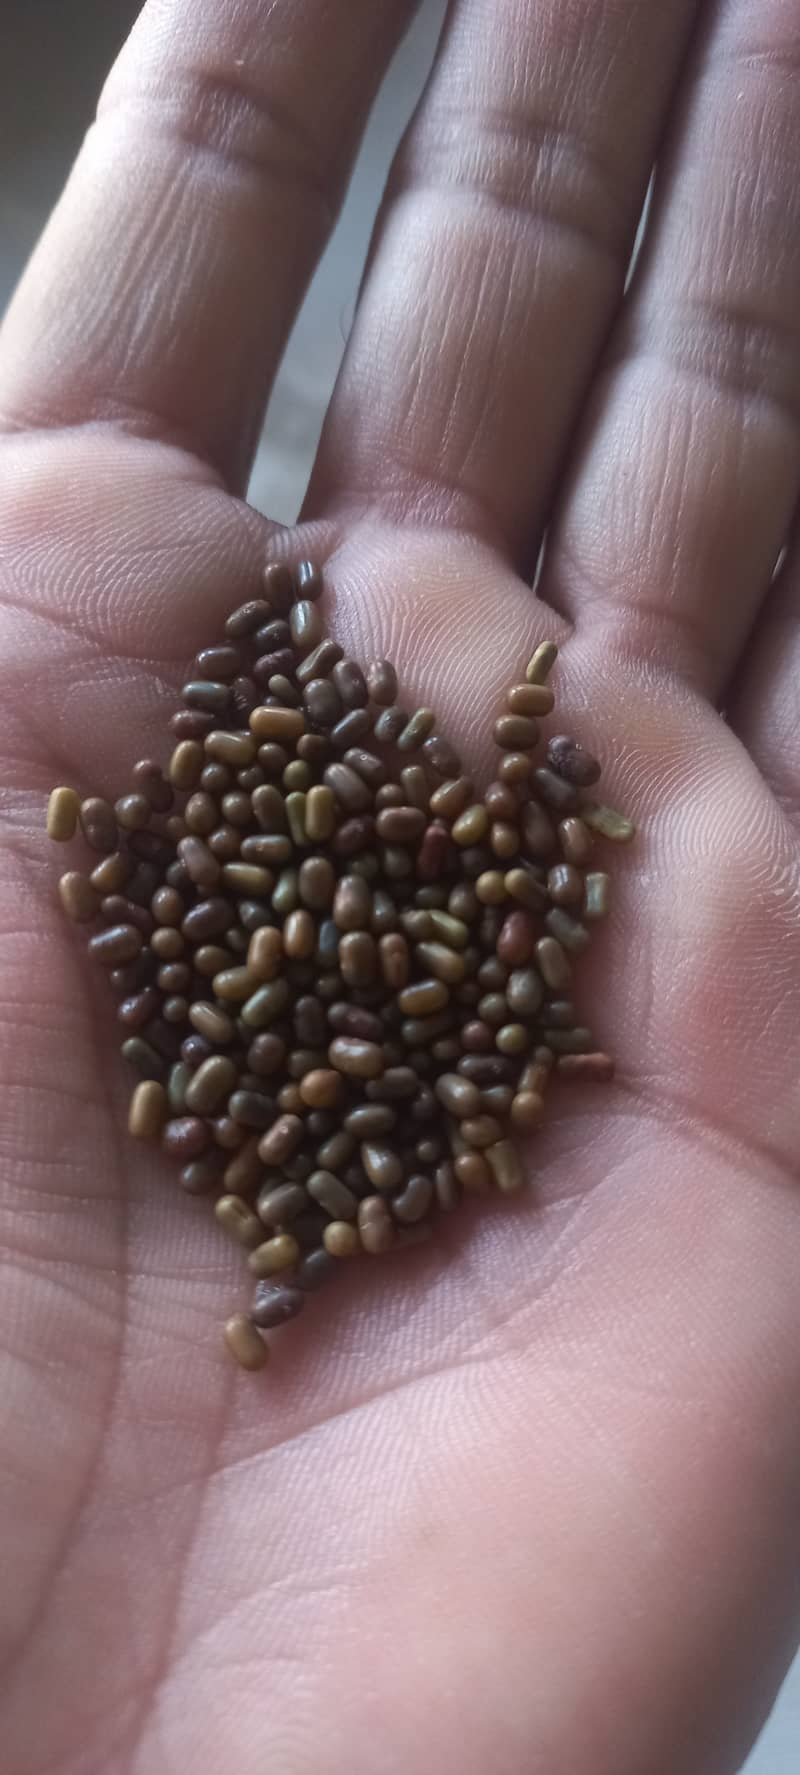 Jantar Seed, Sesbania Seed 1